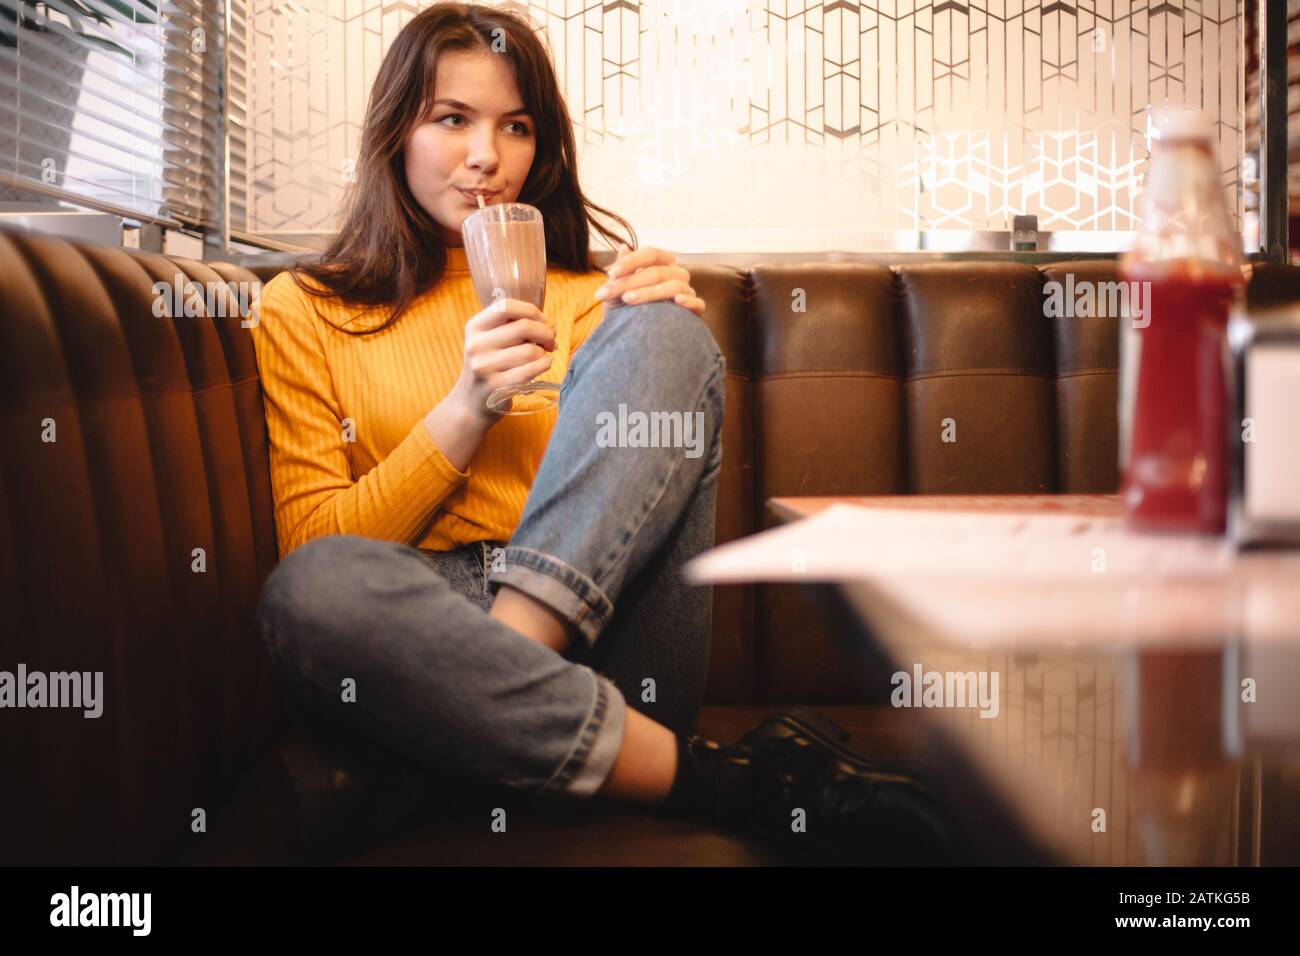 Thoughtful teenage girl drinking chocolate milkshake in restaurant Stock Photo